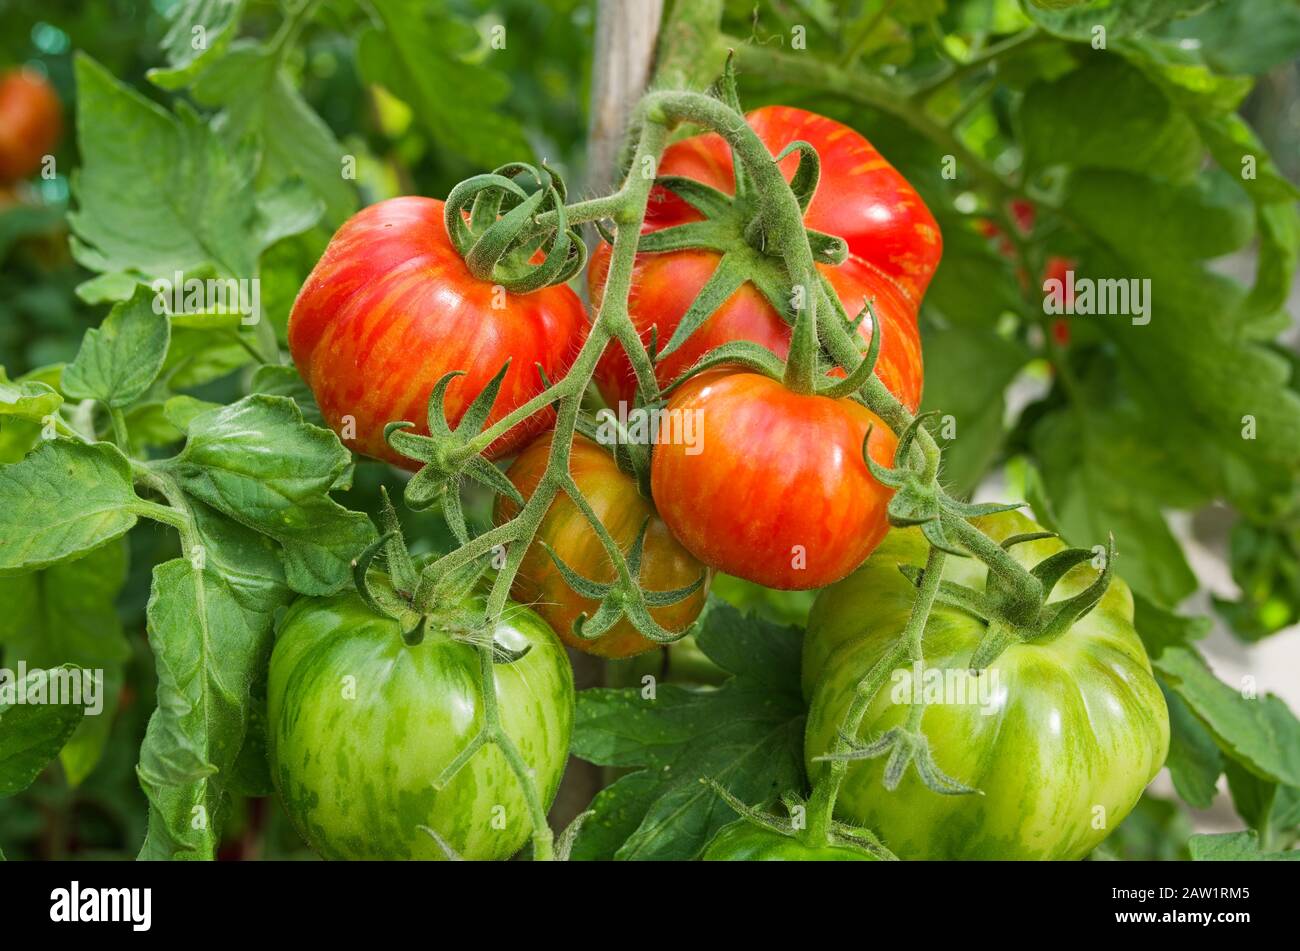 Gros plan d'une large armature de tomates farniches à rayures, mûrissement sur la vigne en été dans la serre domestique, Angleterre Royaume-Uni. Banque D'Images